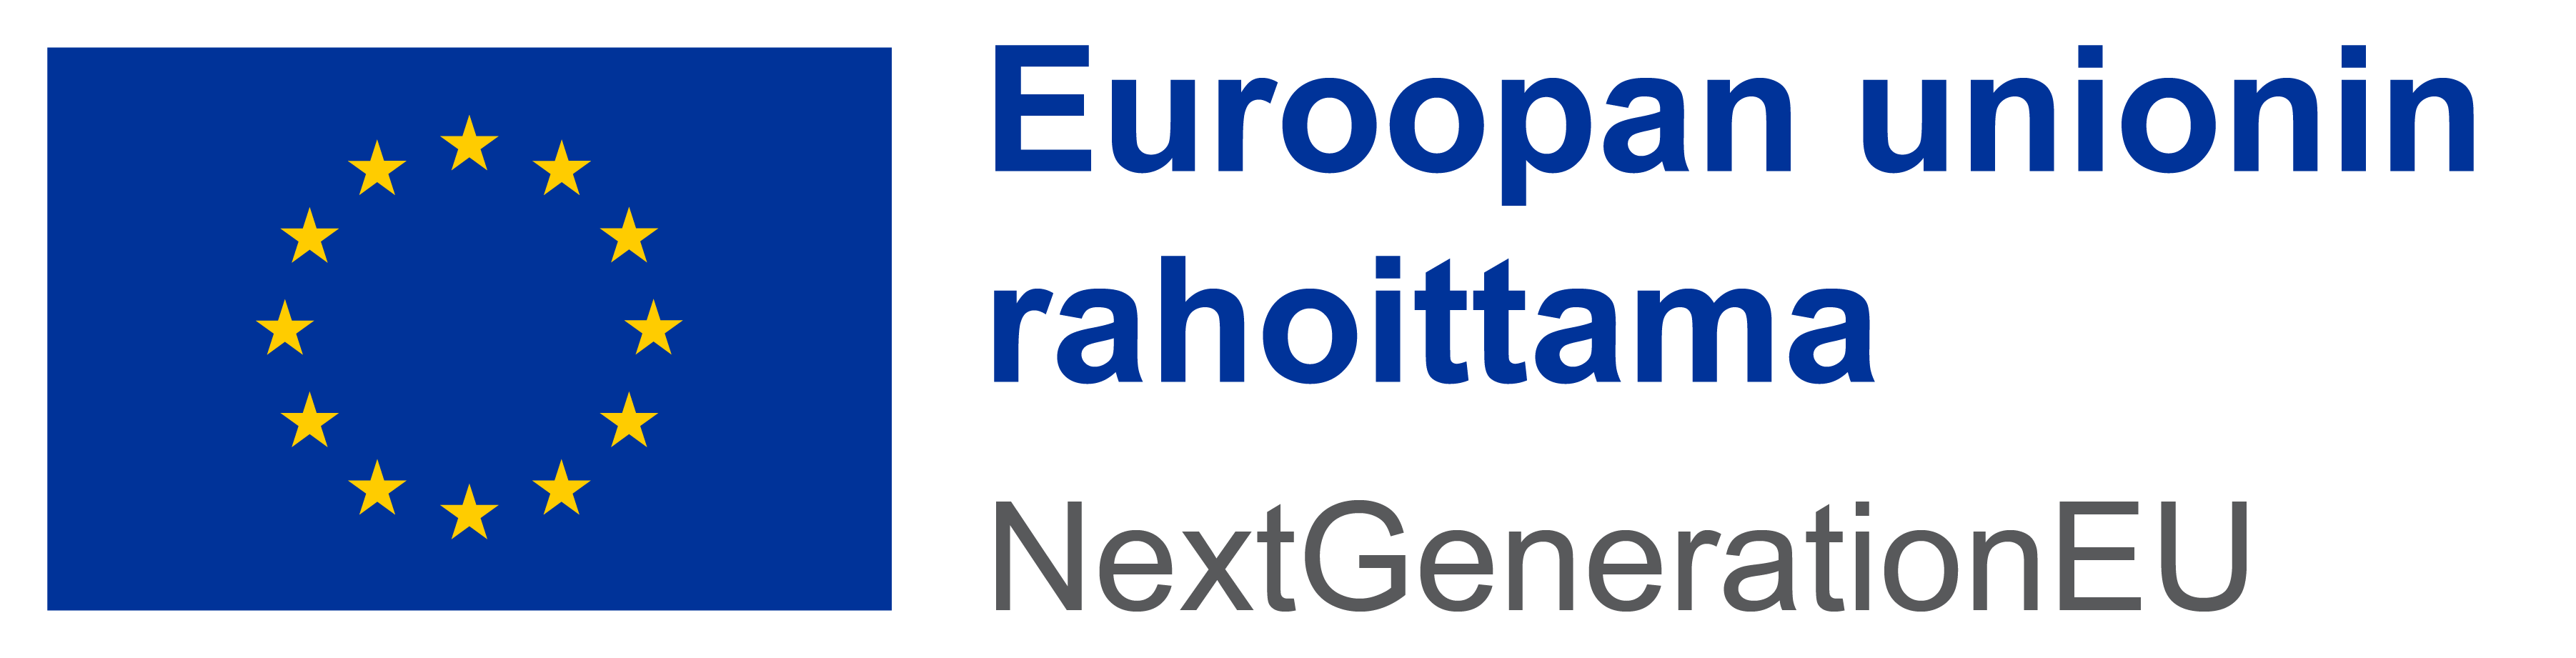 Euroopan unionin rahoittama NextGenerationEU